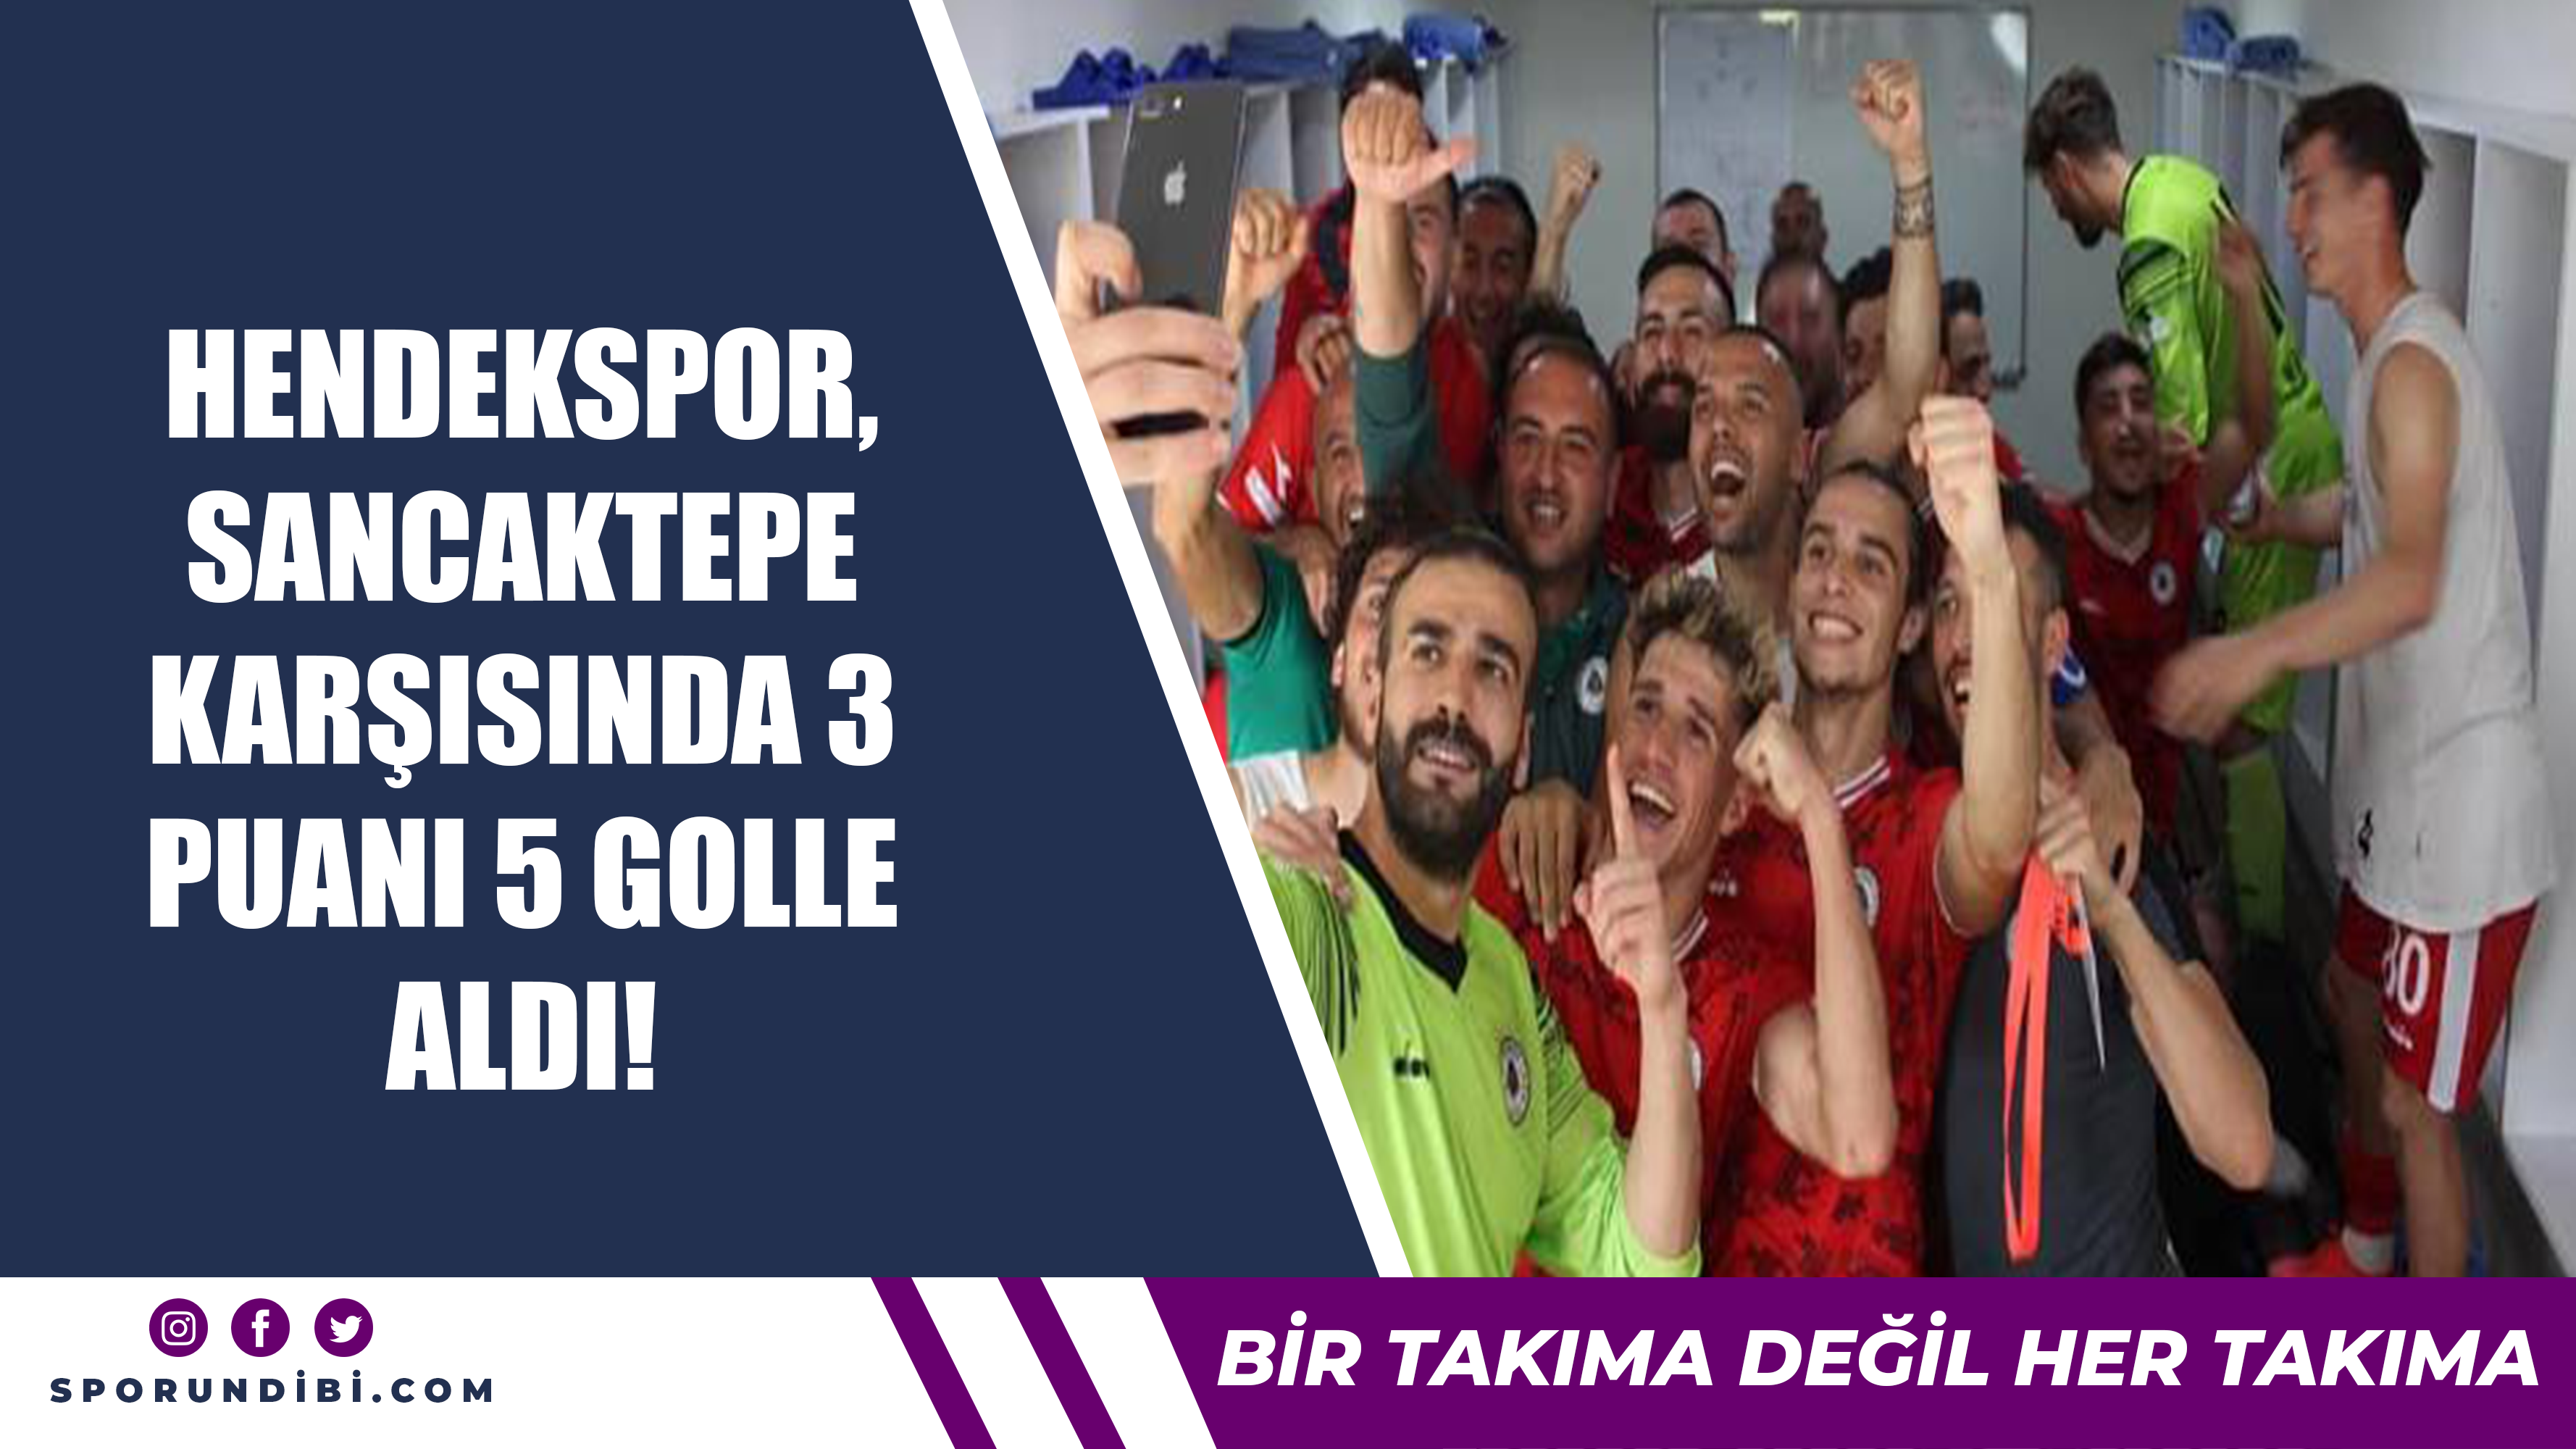 Hendekspor, Sancaktepe karşısında 3 puanı 5 golle aldı!